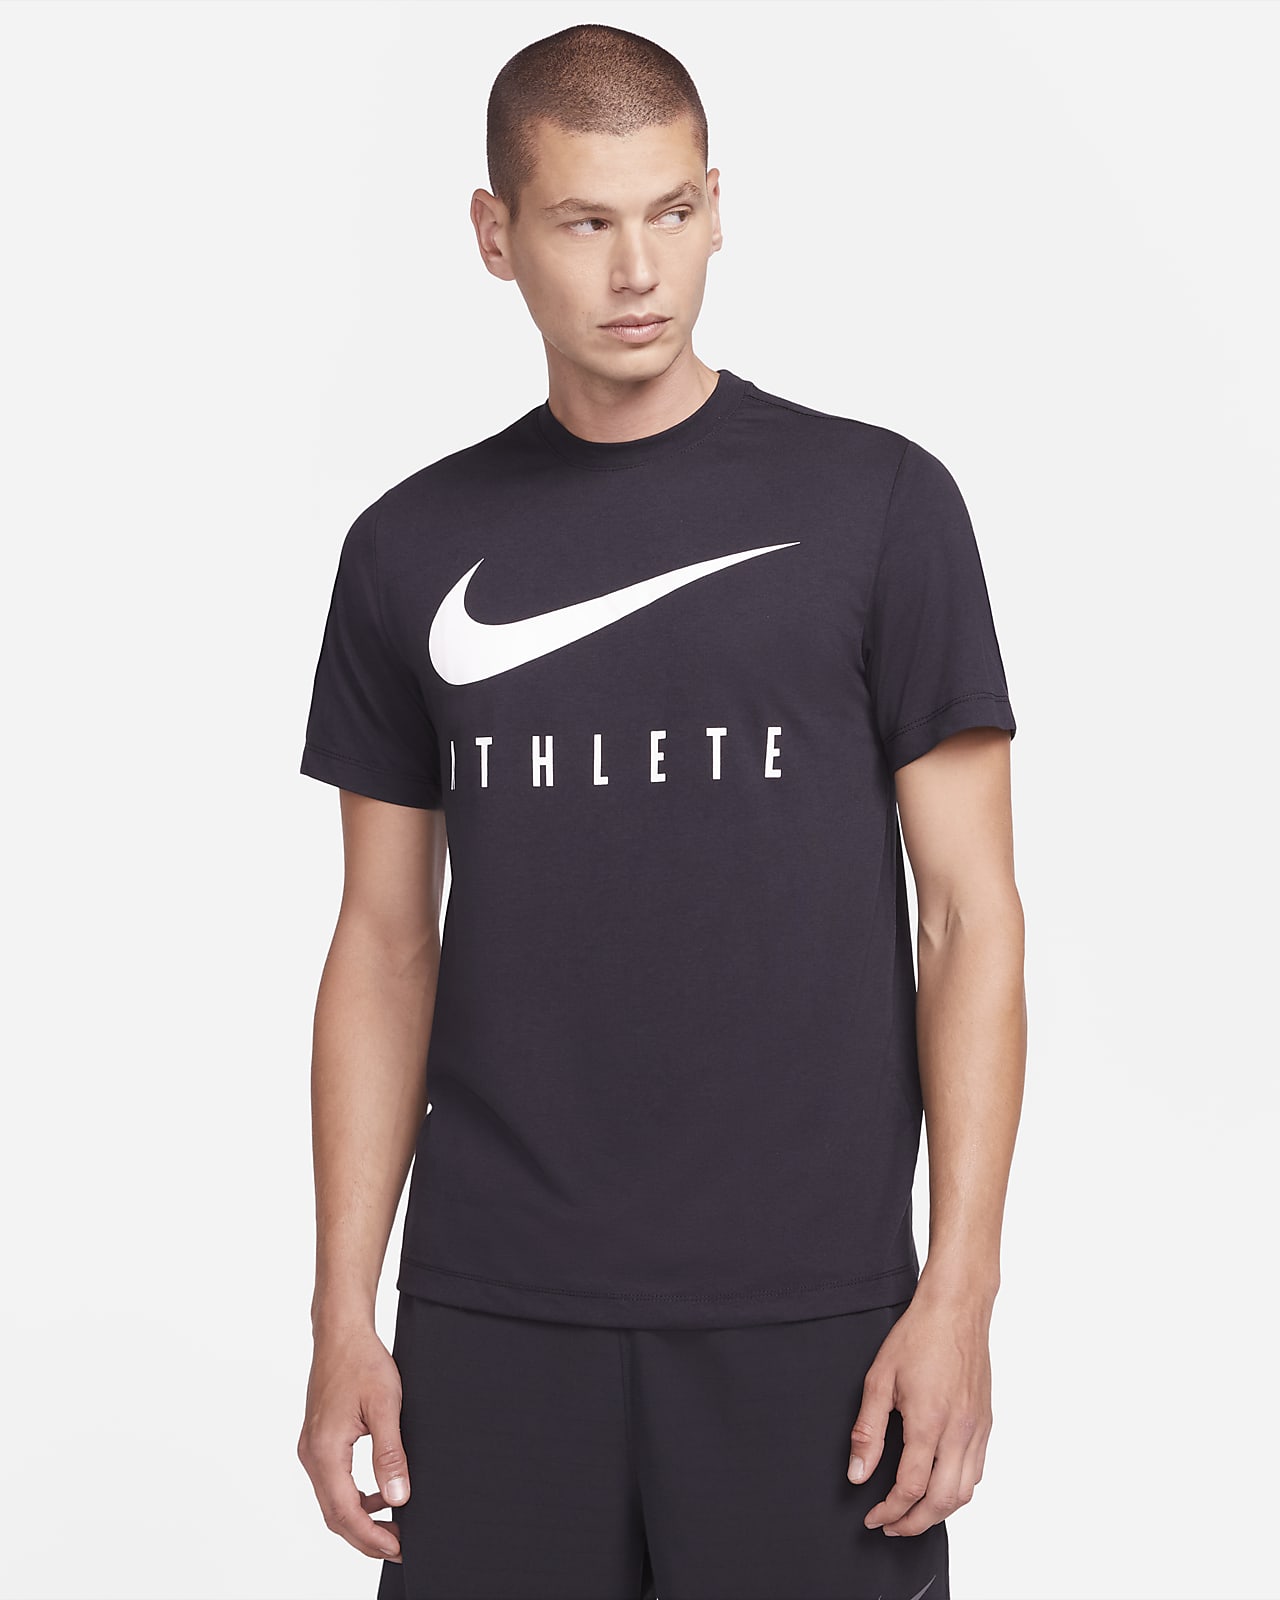 Matroos doos kleermaker Nike Dri-FIT Men's Training T-Shirt. Nike LU